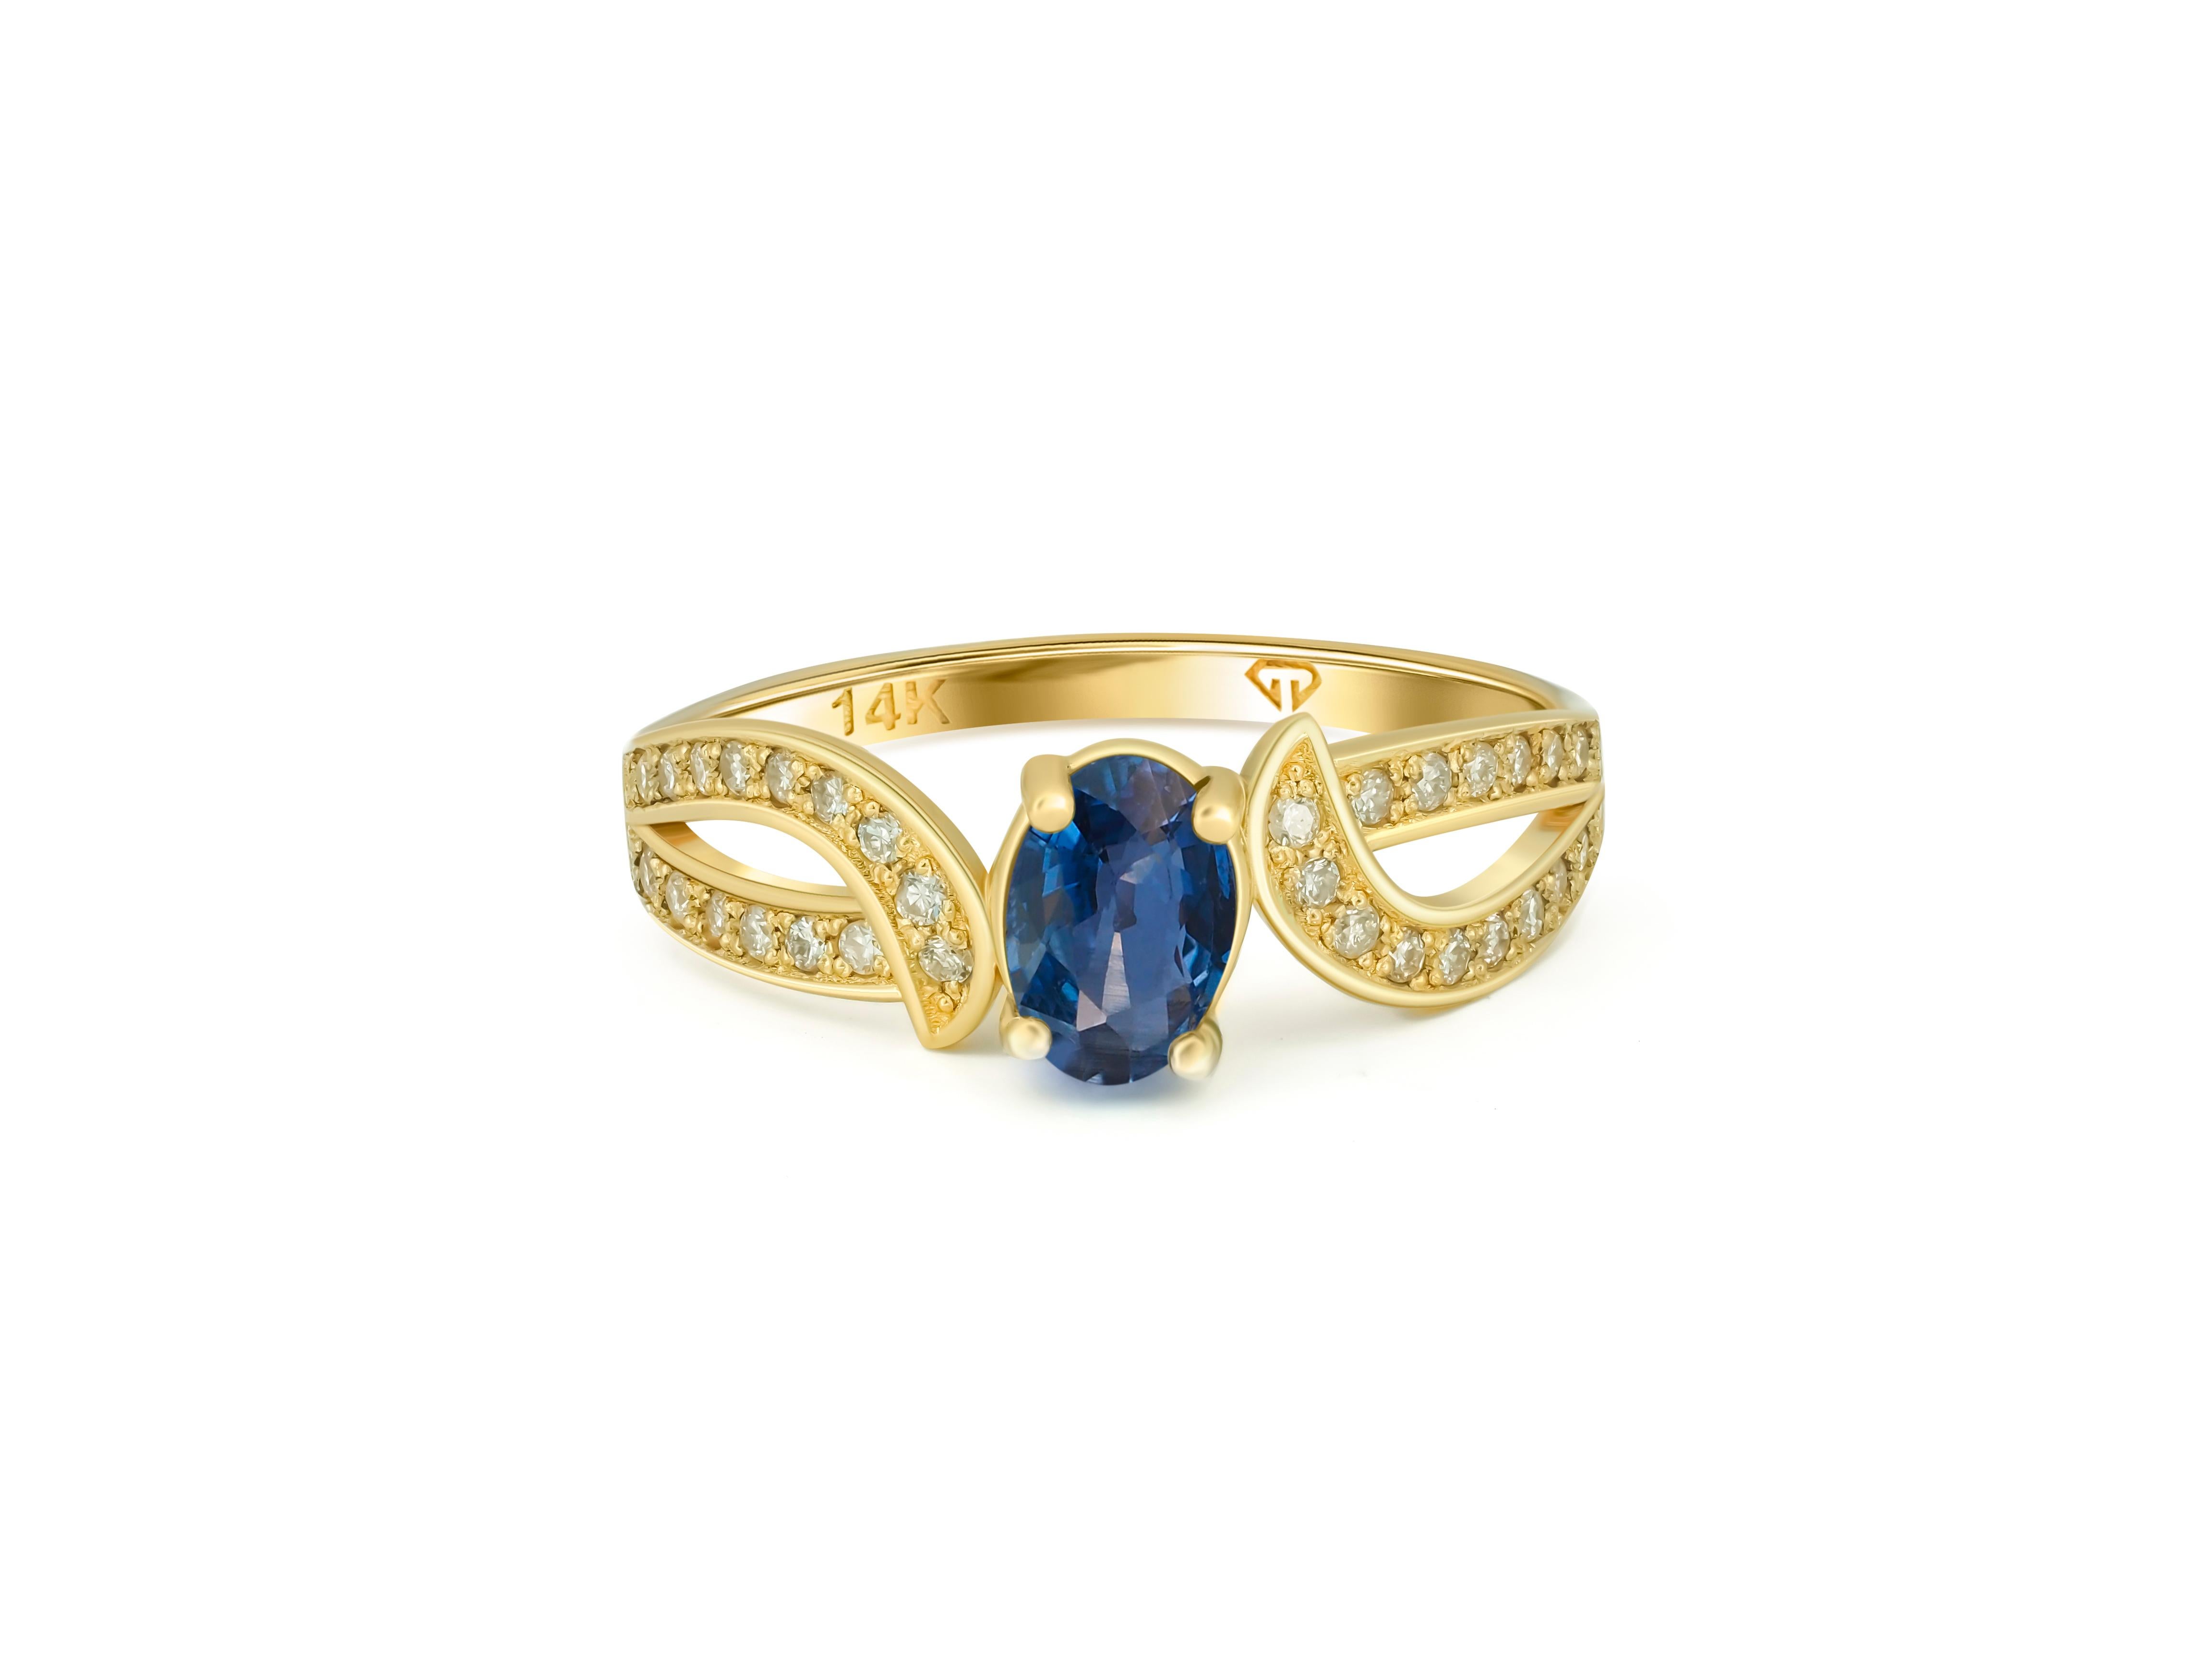 Echter Saphir 14k Gold Ring. 
Verlobungsring mit Saphir. Vintage-Ring mit Saphir. Goldring mit Saphir. Ring mit blauem Saphir.

Metall: 14kt Massivgold
Gesamtgewicht: 2 gr. (abhängig von der Größe).

Zentraler Edelstein: Natürlicher Saphir
Farbe: